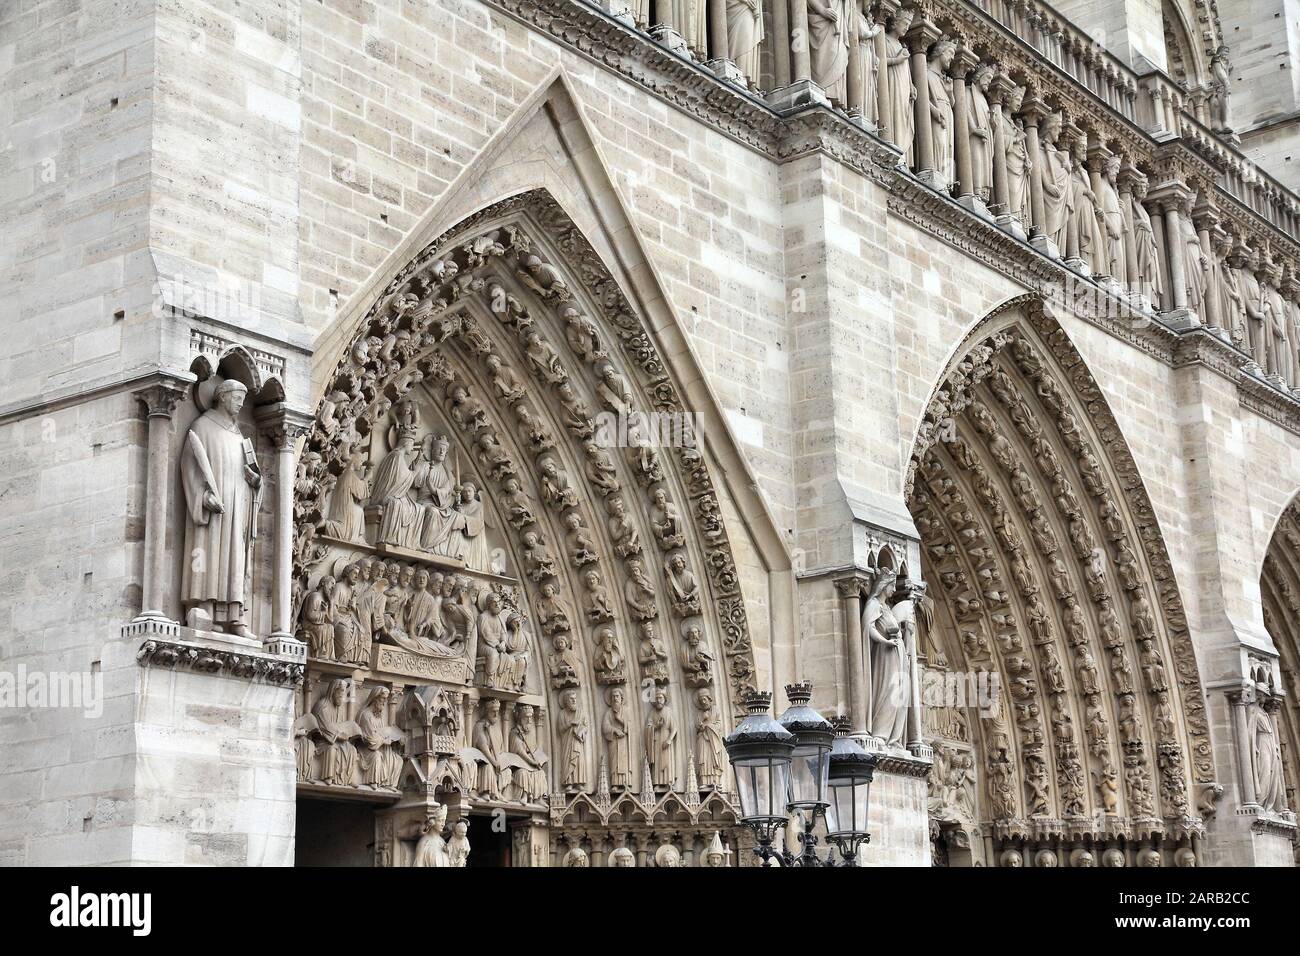 Kathedrale Notre-Dame in Paris, Frankreich. Französisches gotisches Wahrzeichen. Stockfoto